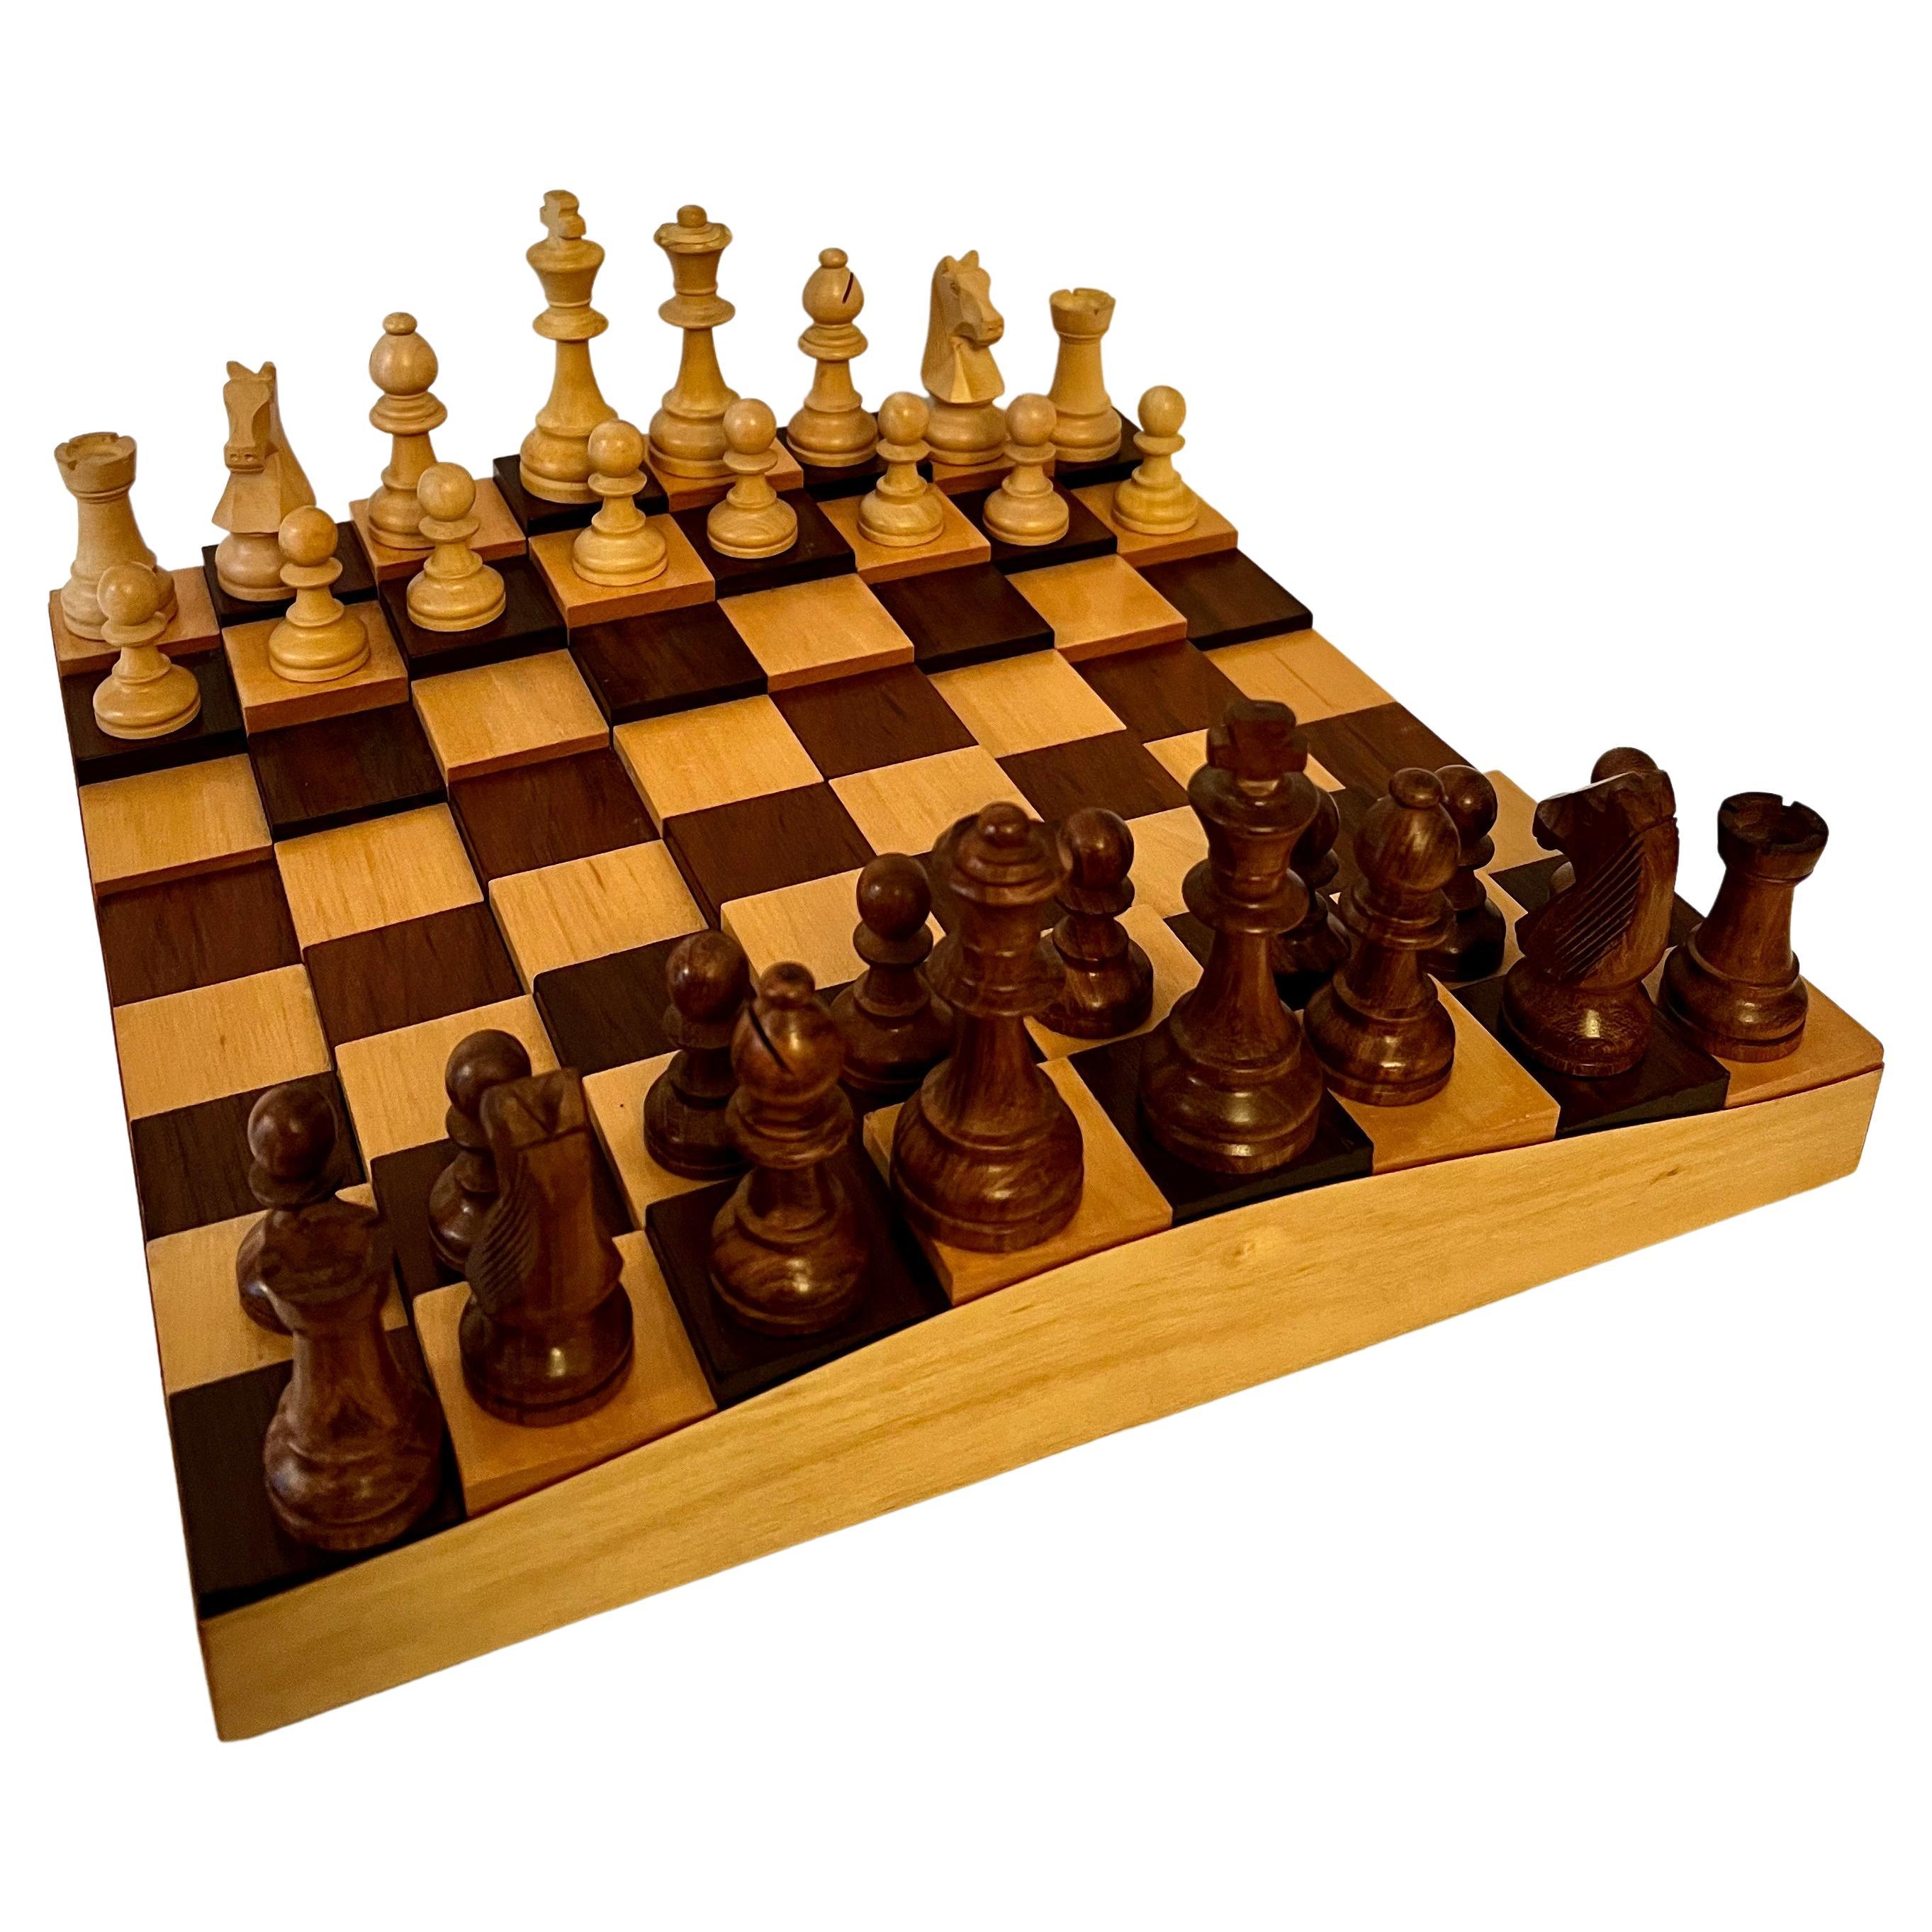 3dimensionales Schach- oder Schachbrett aus Holz mit Schachspielern